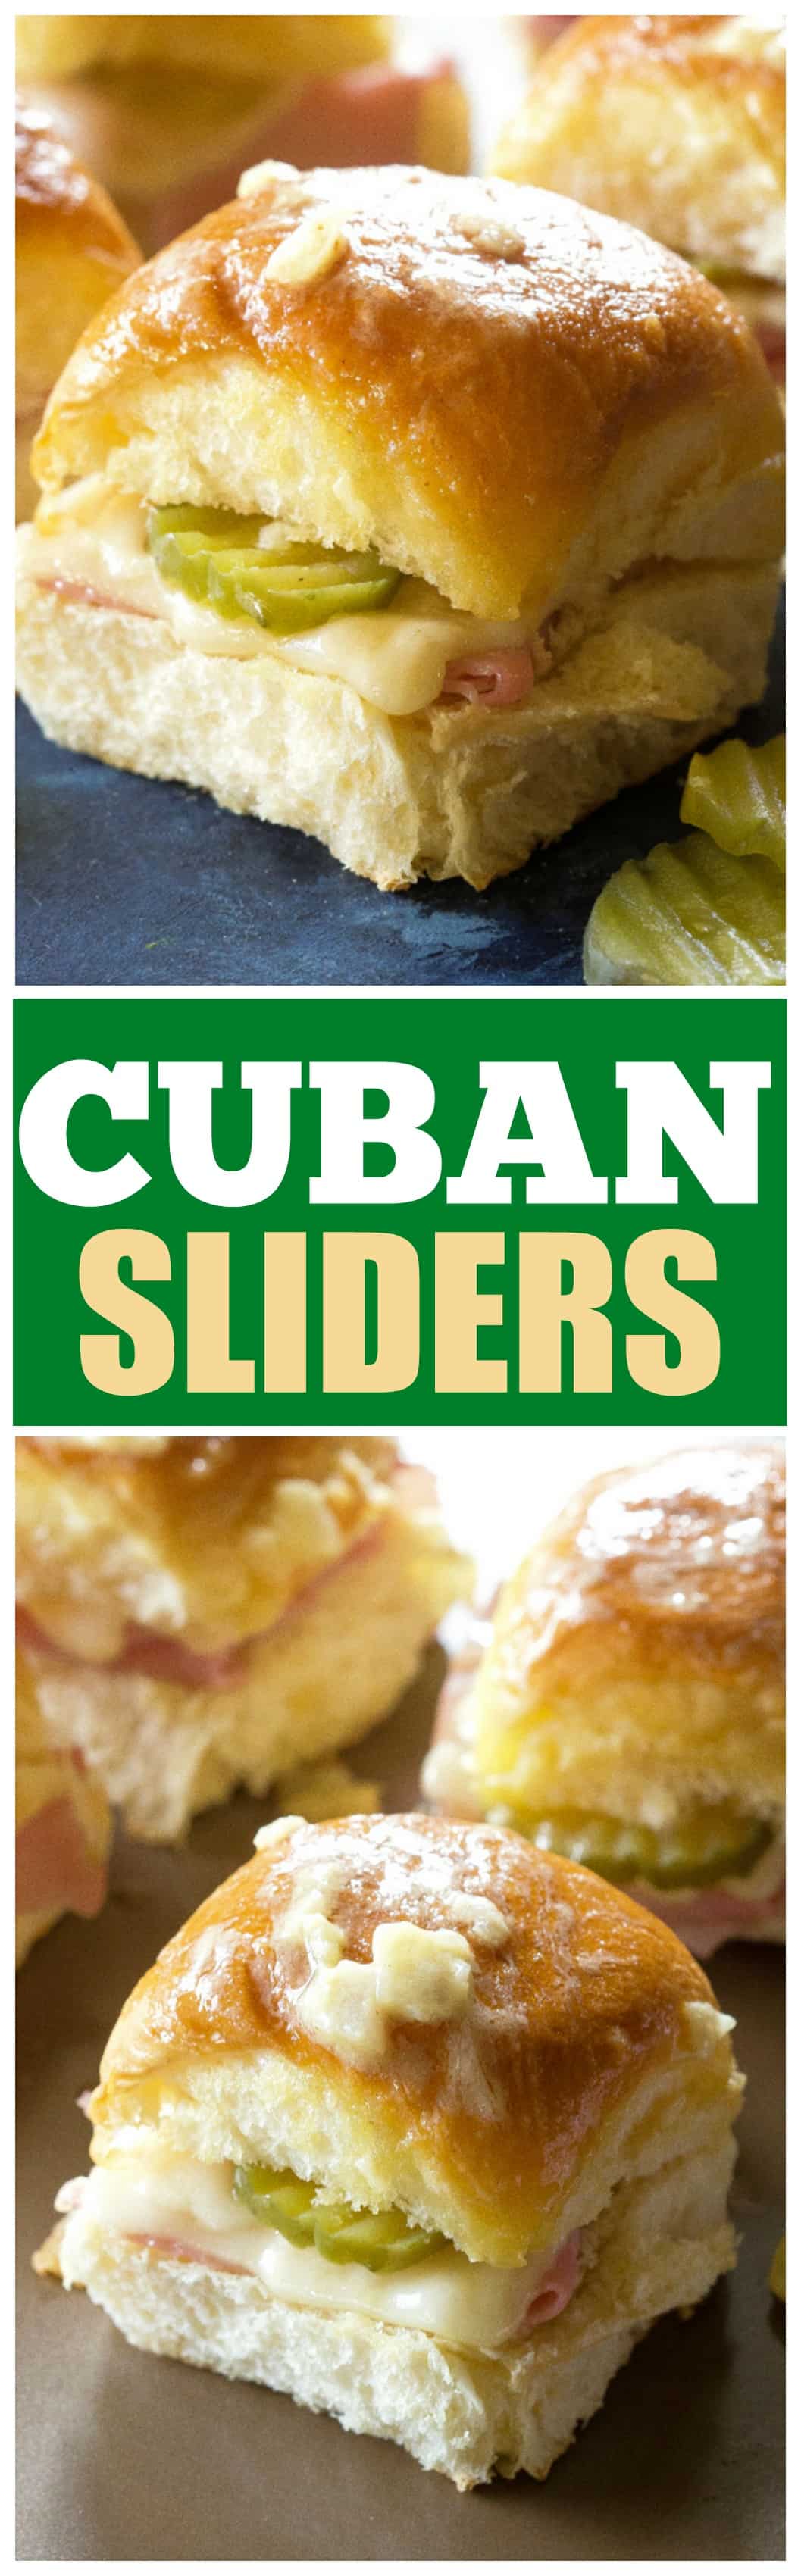 cuban sliders 